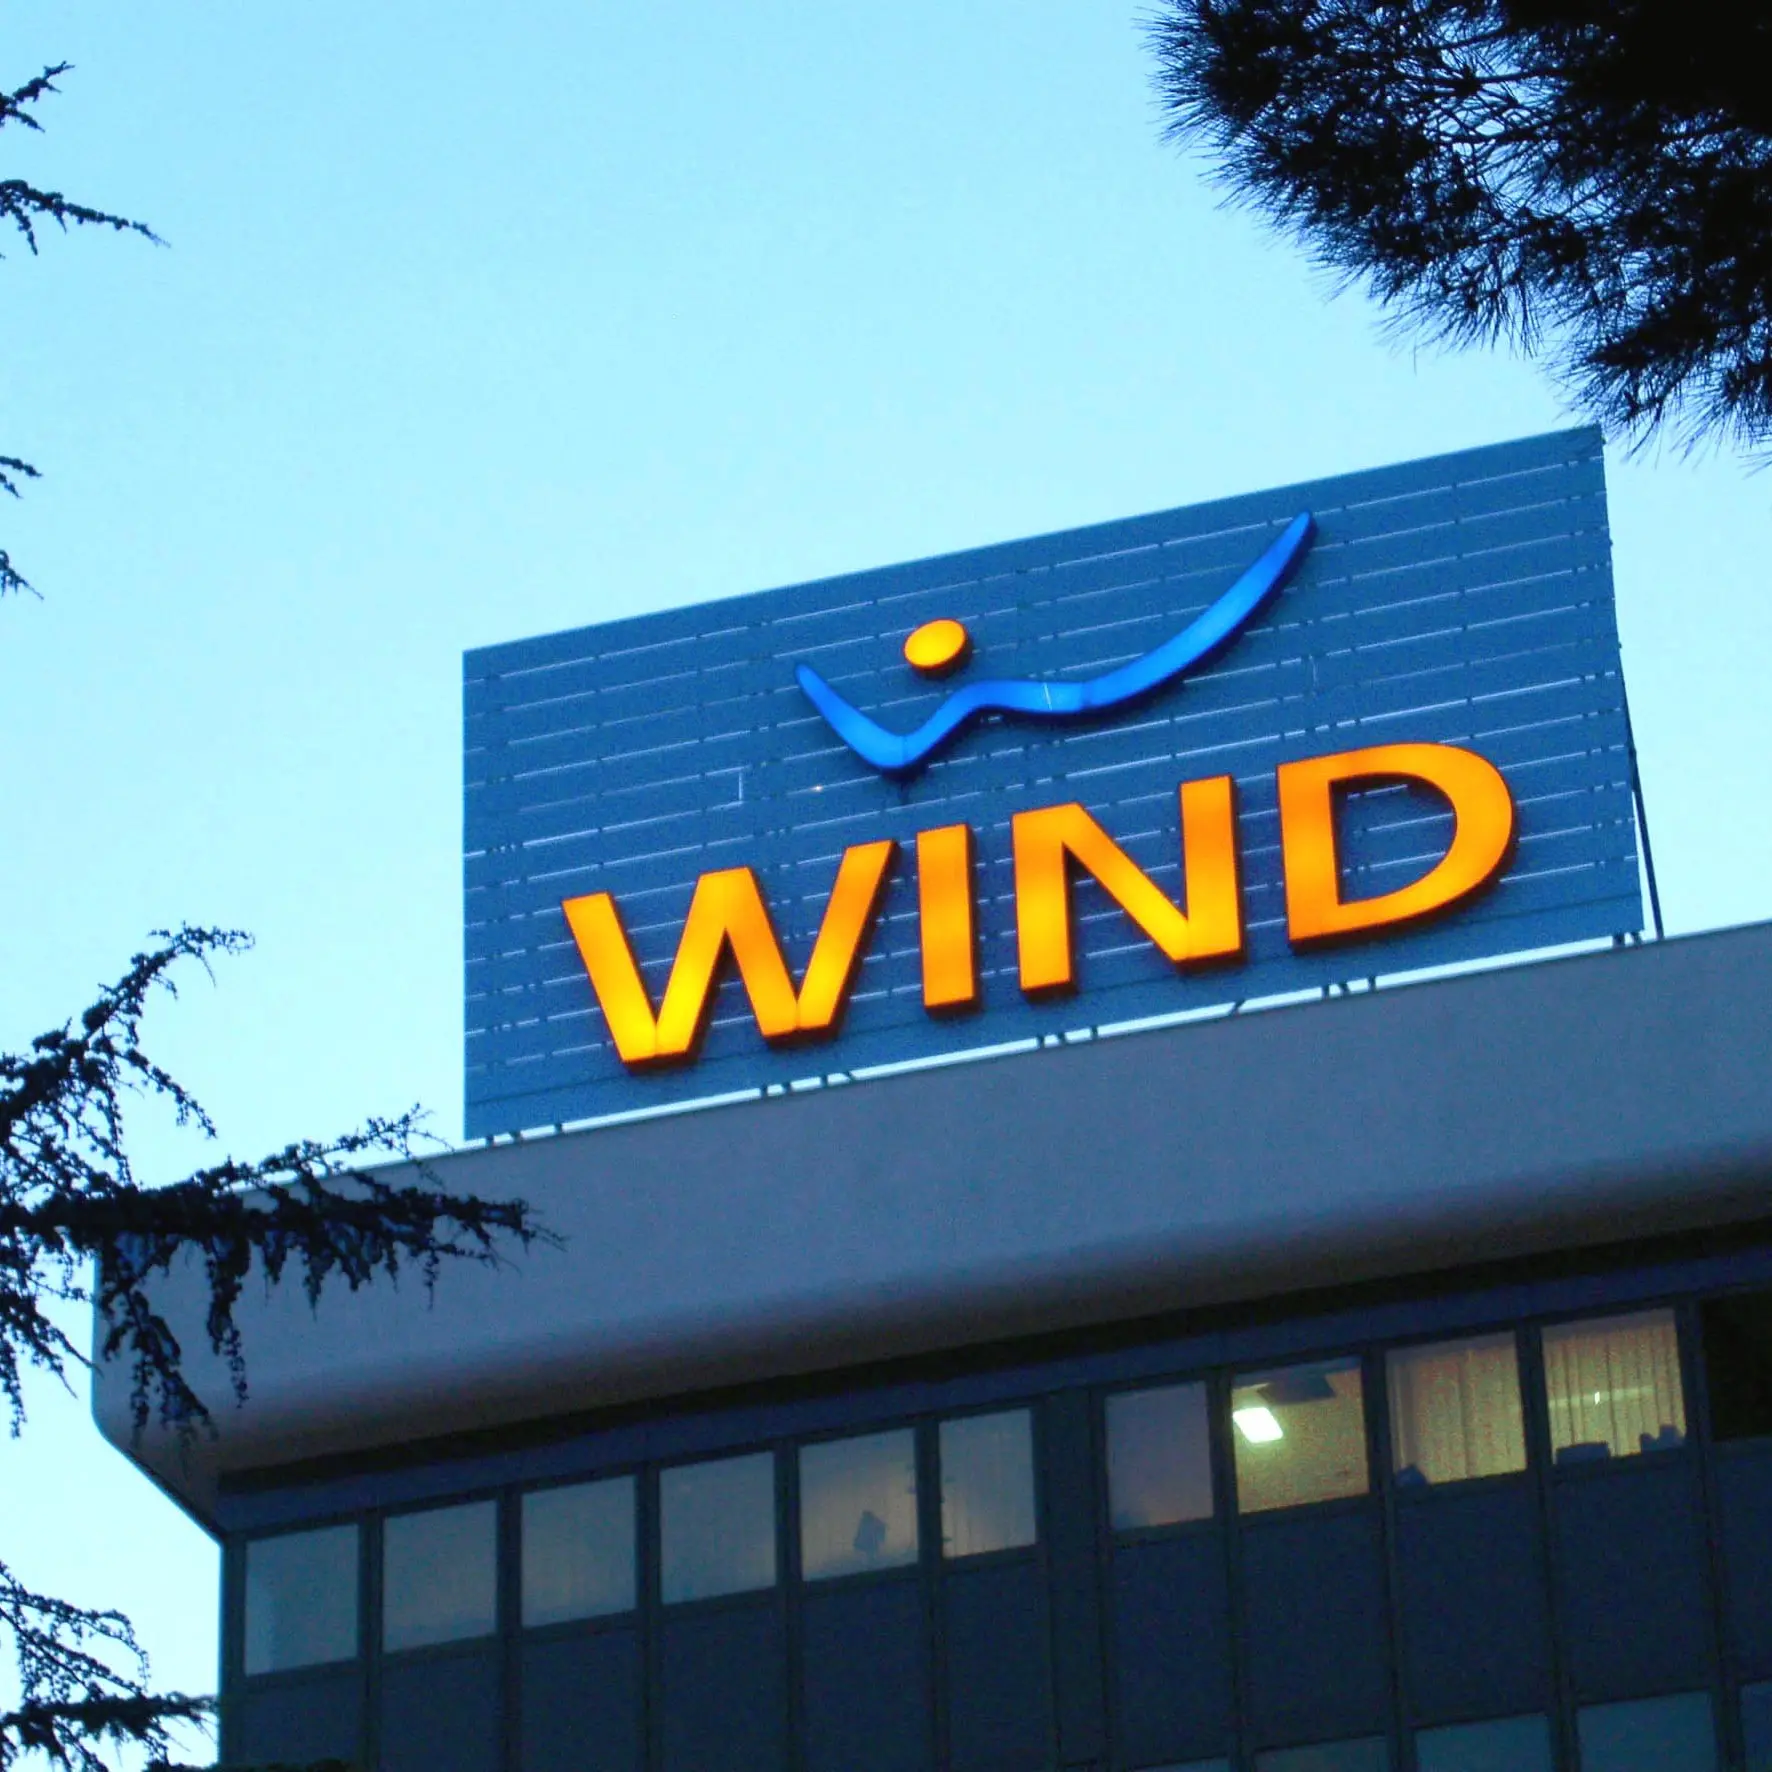 Wind Tre esternalizza il data center